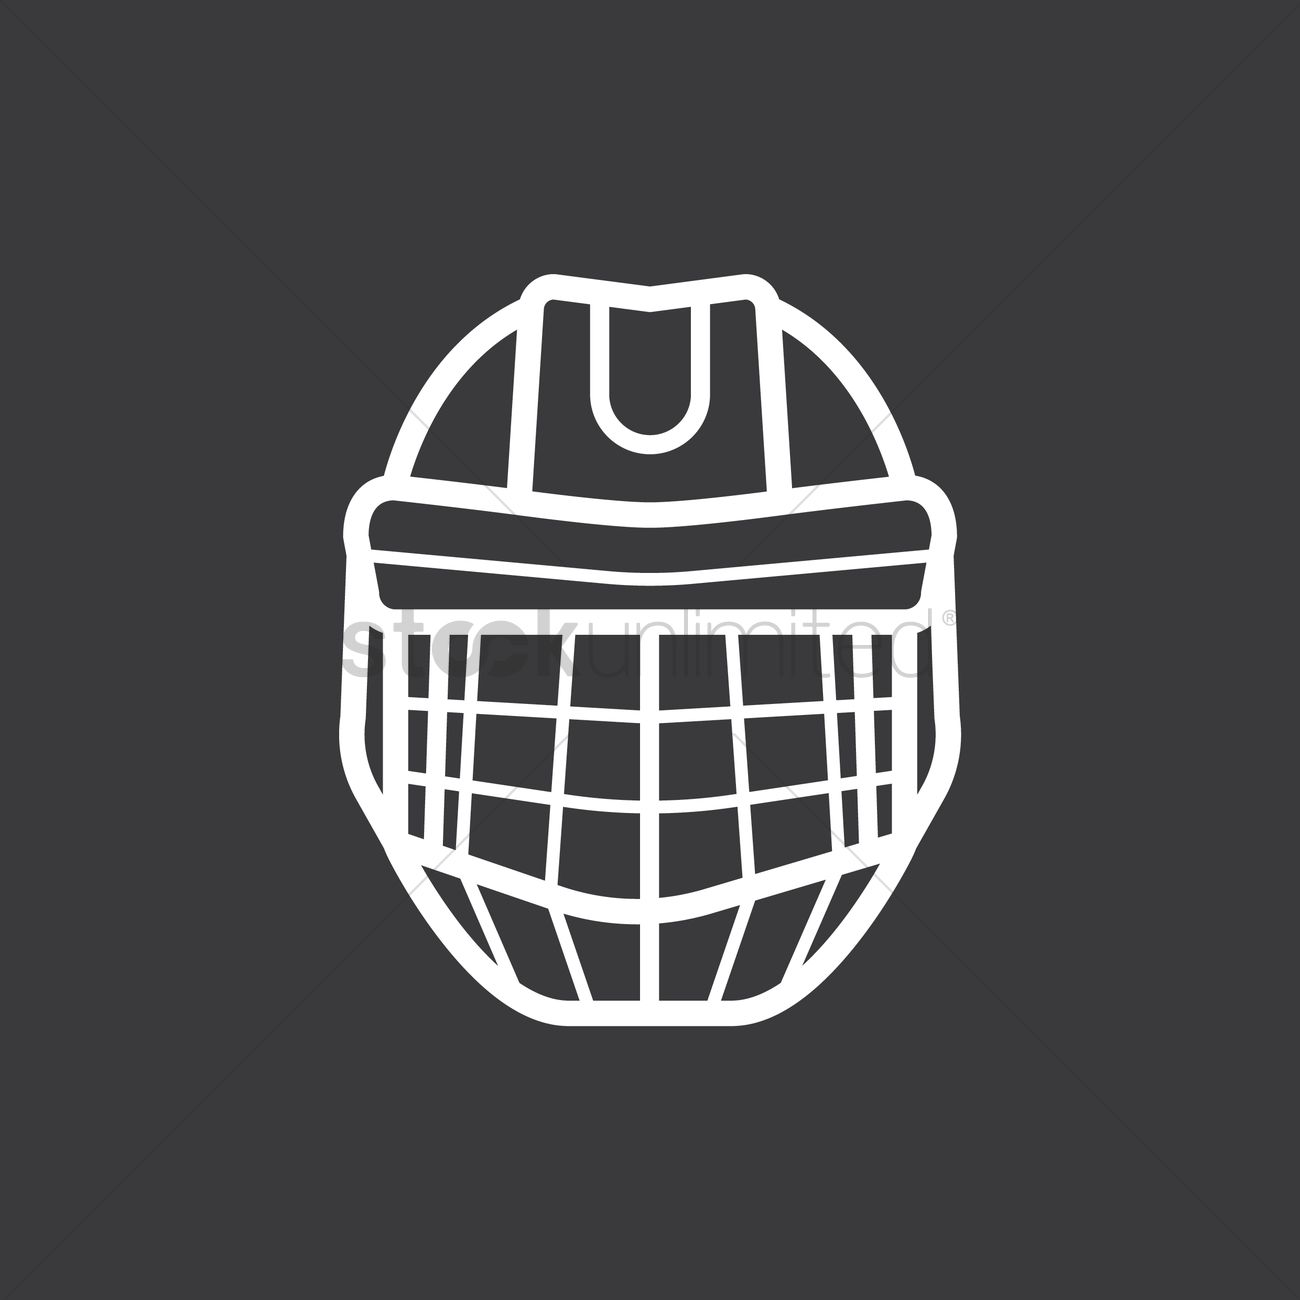 back of goalie mask plain clip art